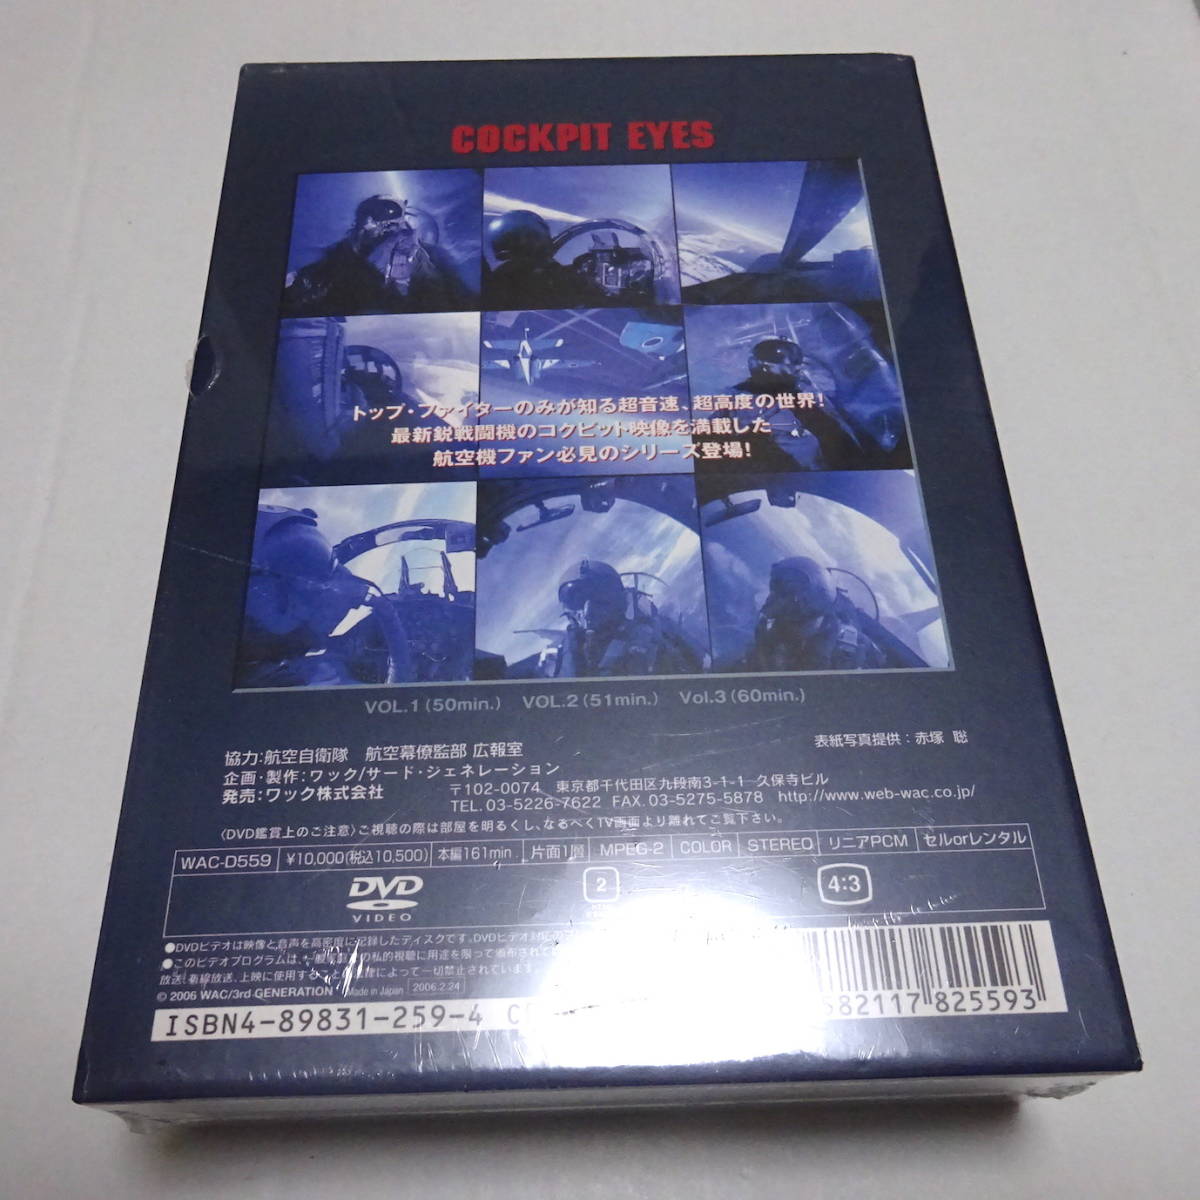  нераспечатанный /DVD-BOX/3 листов комплект [kokpito* I zVol,1,2,3]F-4/F-2/F-15J/ голубой Impulse 